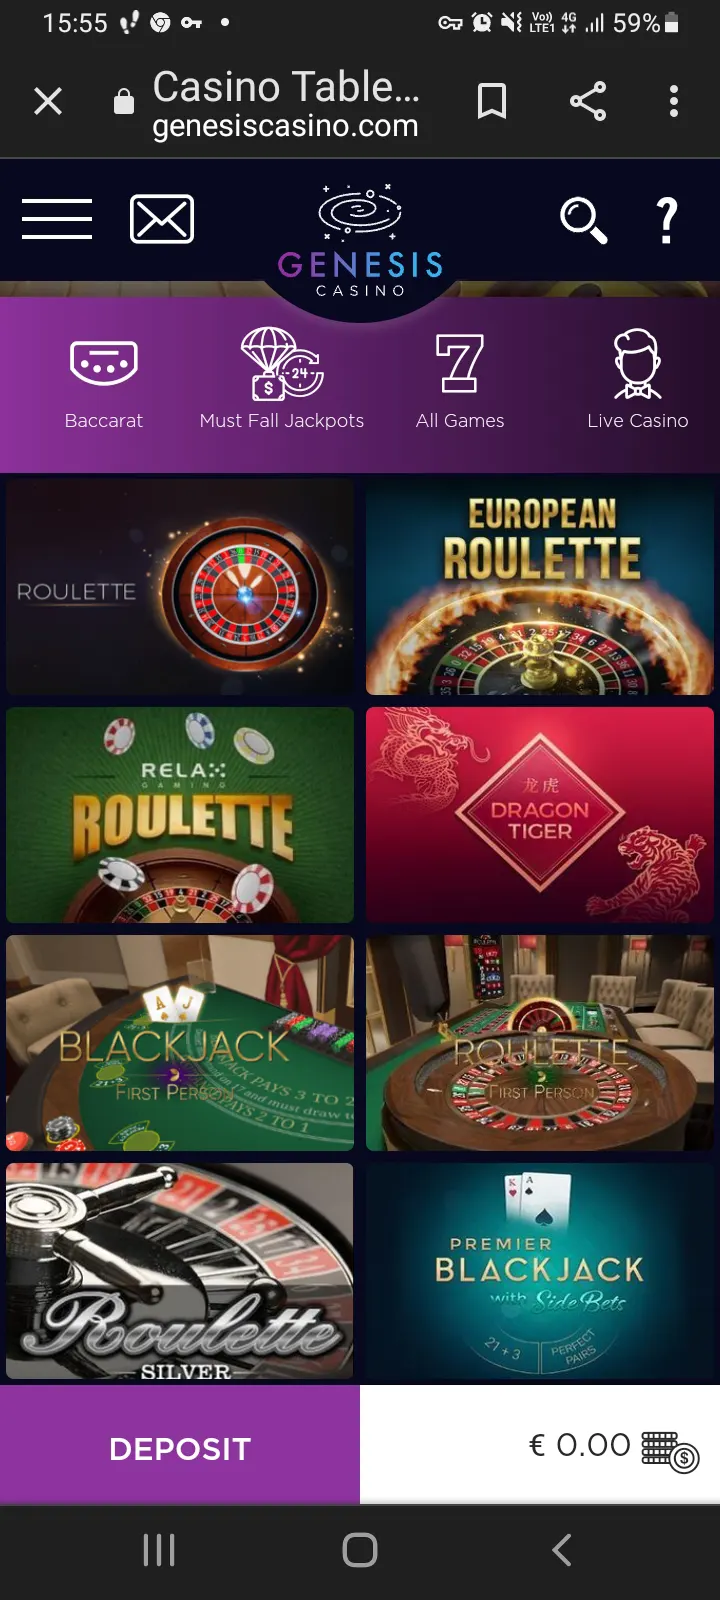 Genesis casino app screenshot 3